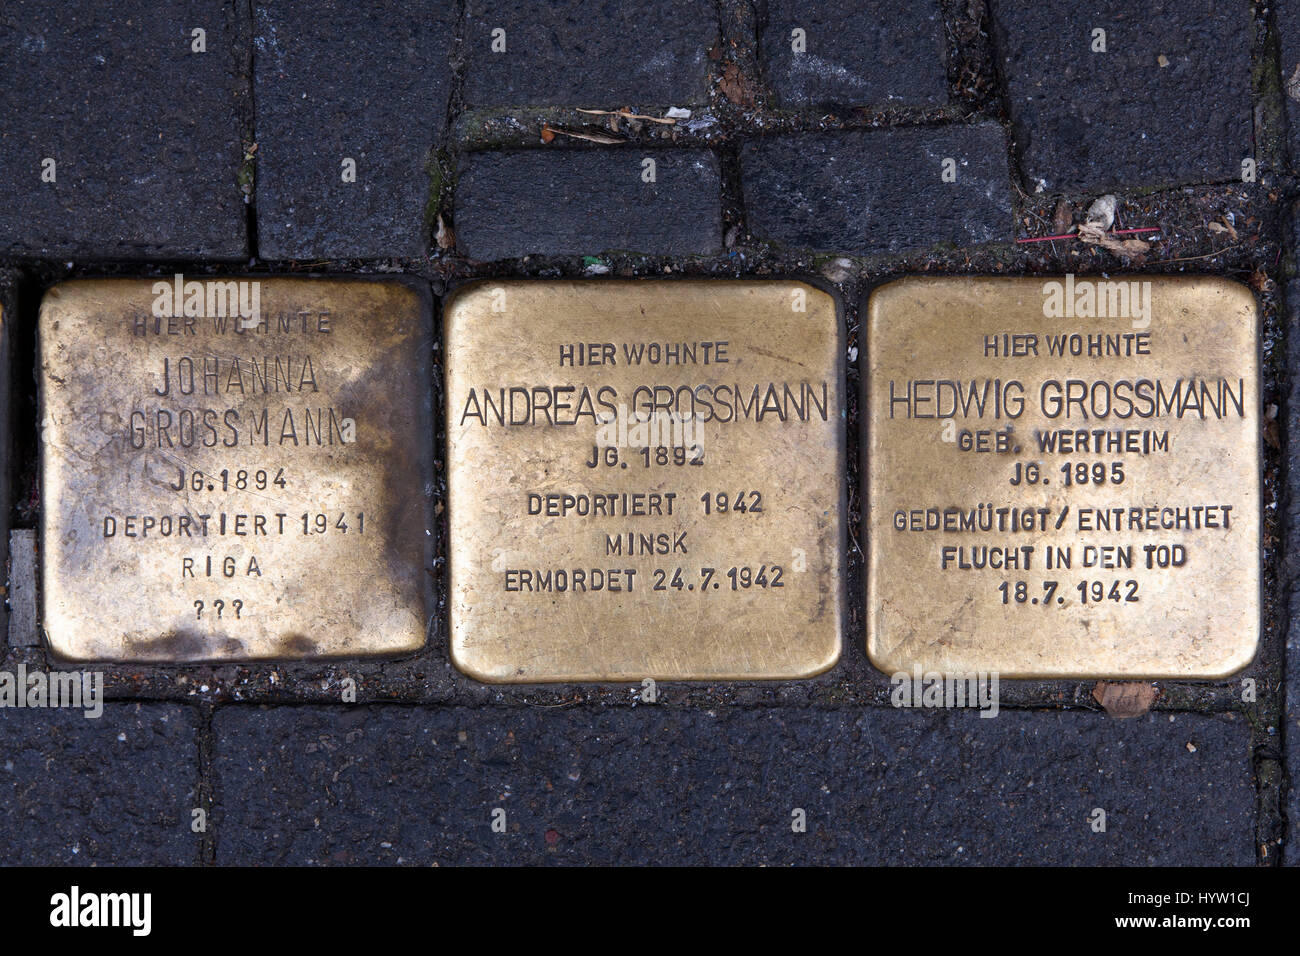 Alemania, Colonia, Stolpersteine (piedras de tropiezo) por el artista Gunter Demnig. Las piedras de conmemoración de las Víctimas del Nacionalsocialismo (Nazi). Foto de stock